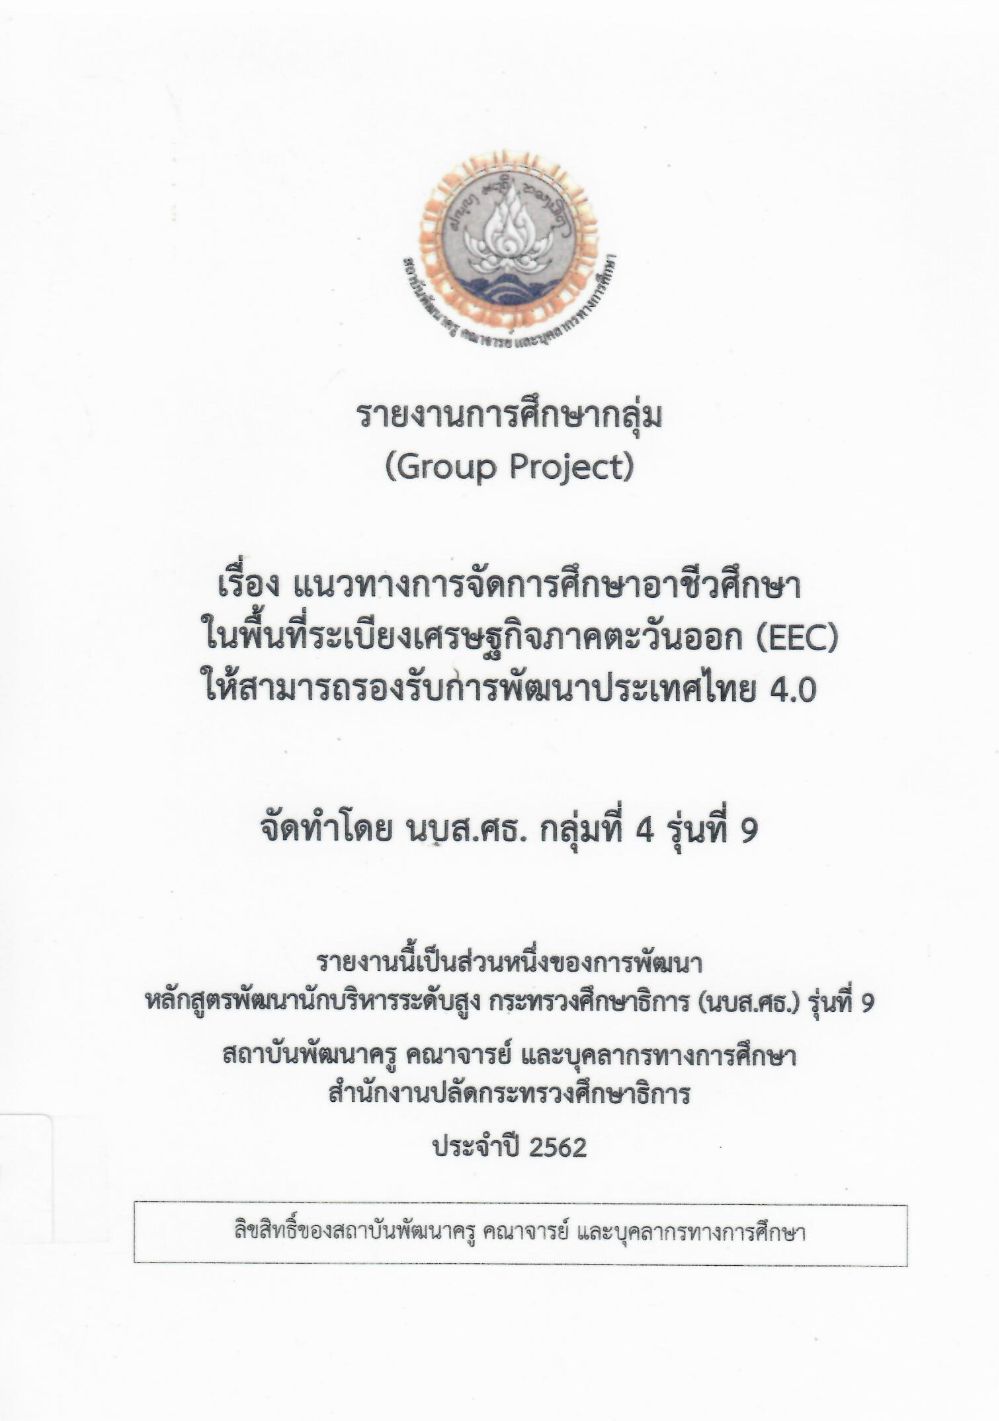 แนวทางการจัดการศึกษาอาชีวศึกษาในพื้นที่ระเบียงเศรษฐกิจภาคตะวันออก (EEC) ให้สามารถรองรับการพัฒนาประเทศไทย 4.0: รายงานการศึกษากลุ่ม (Group Project)/ สิทธิพงษ์ พฤกษอาภรณ์...[และคนอื่น ๆ]